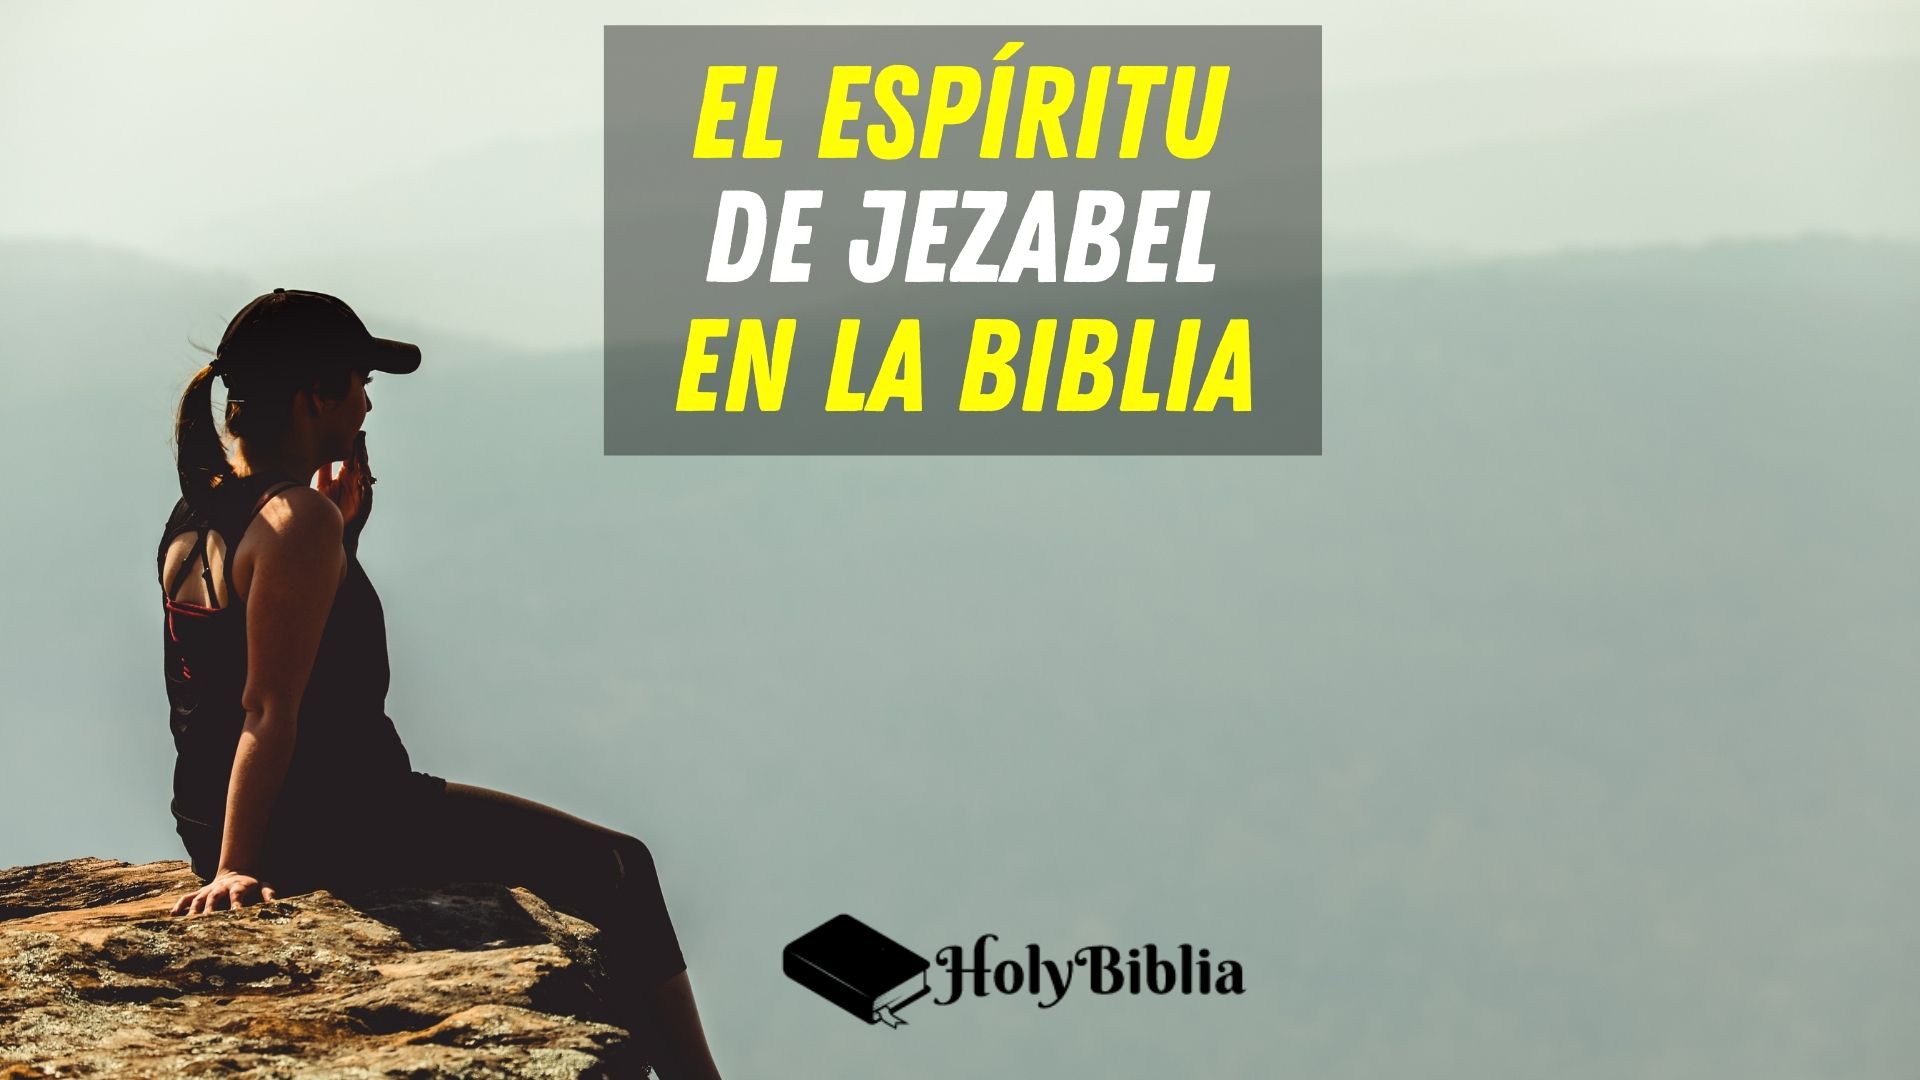 El espíritu de Jezabel en la biblia